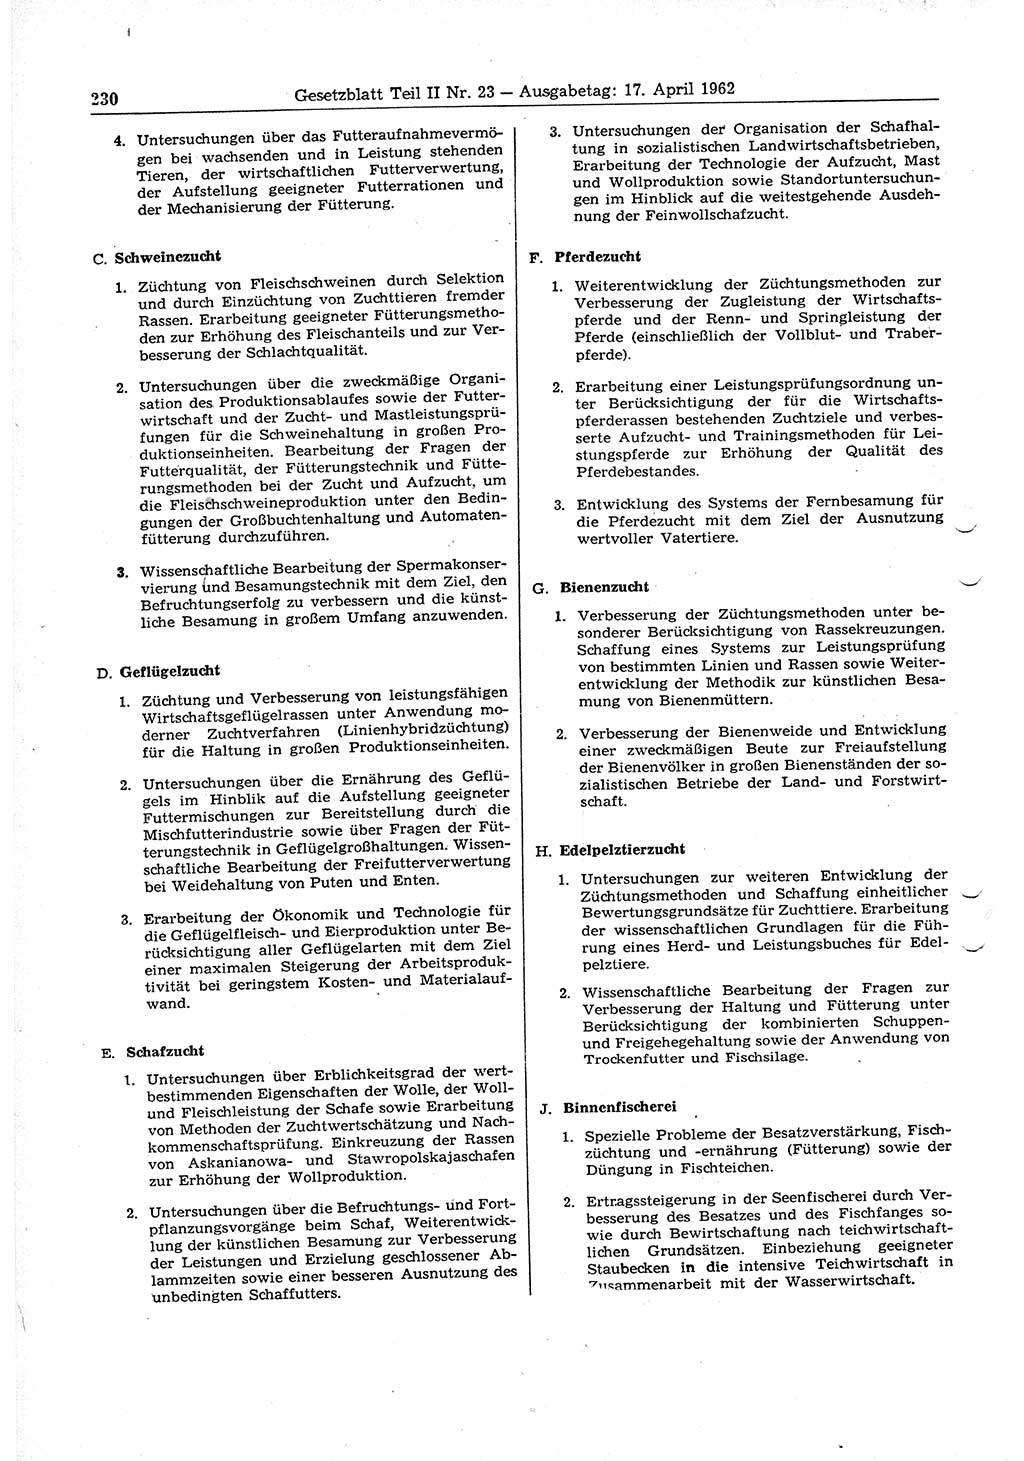 Gesetzblatt (GBl.) der Deutschen Demokratischen Republik (DDR) Teil ⅠⅠ 1962, Seite 230 (GBl. DDR ⅠⅠ 1962, S. 230)